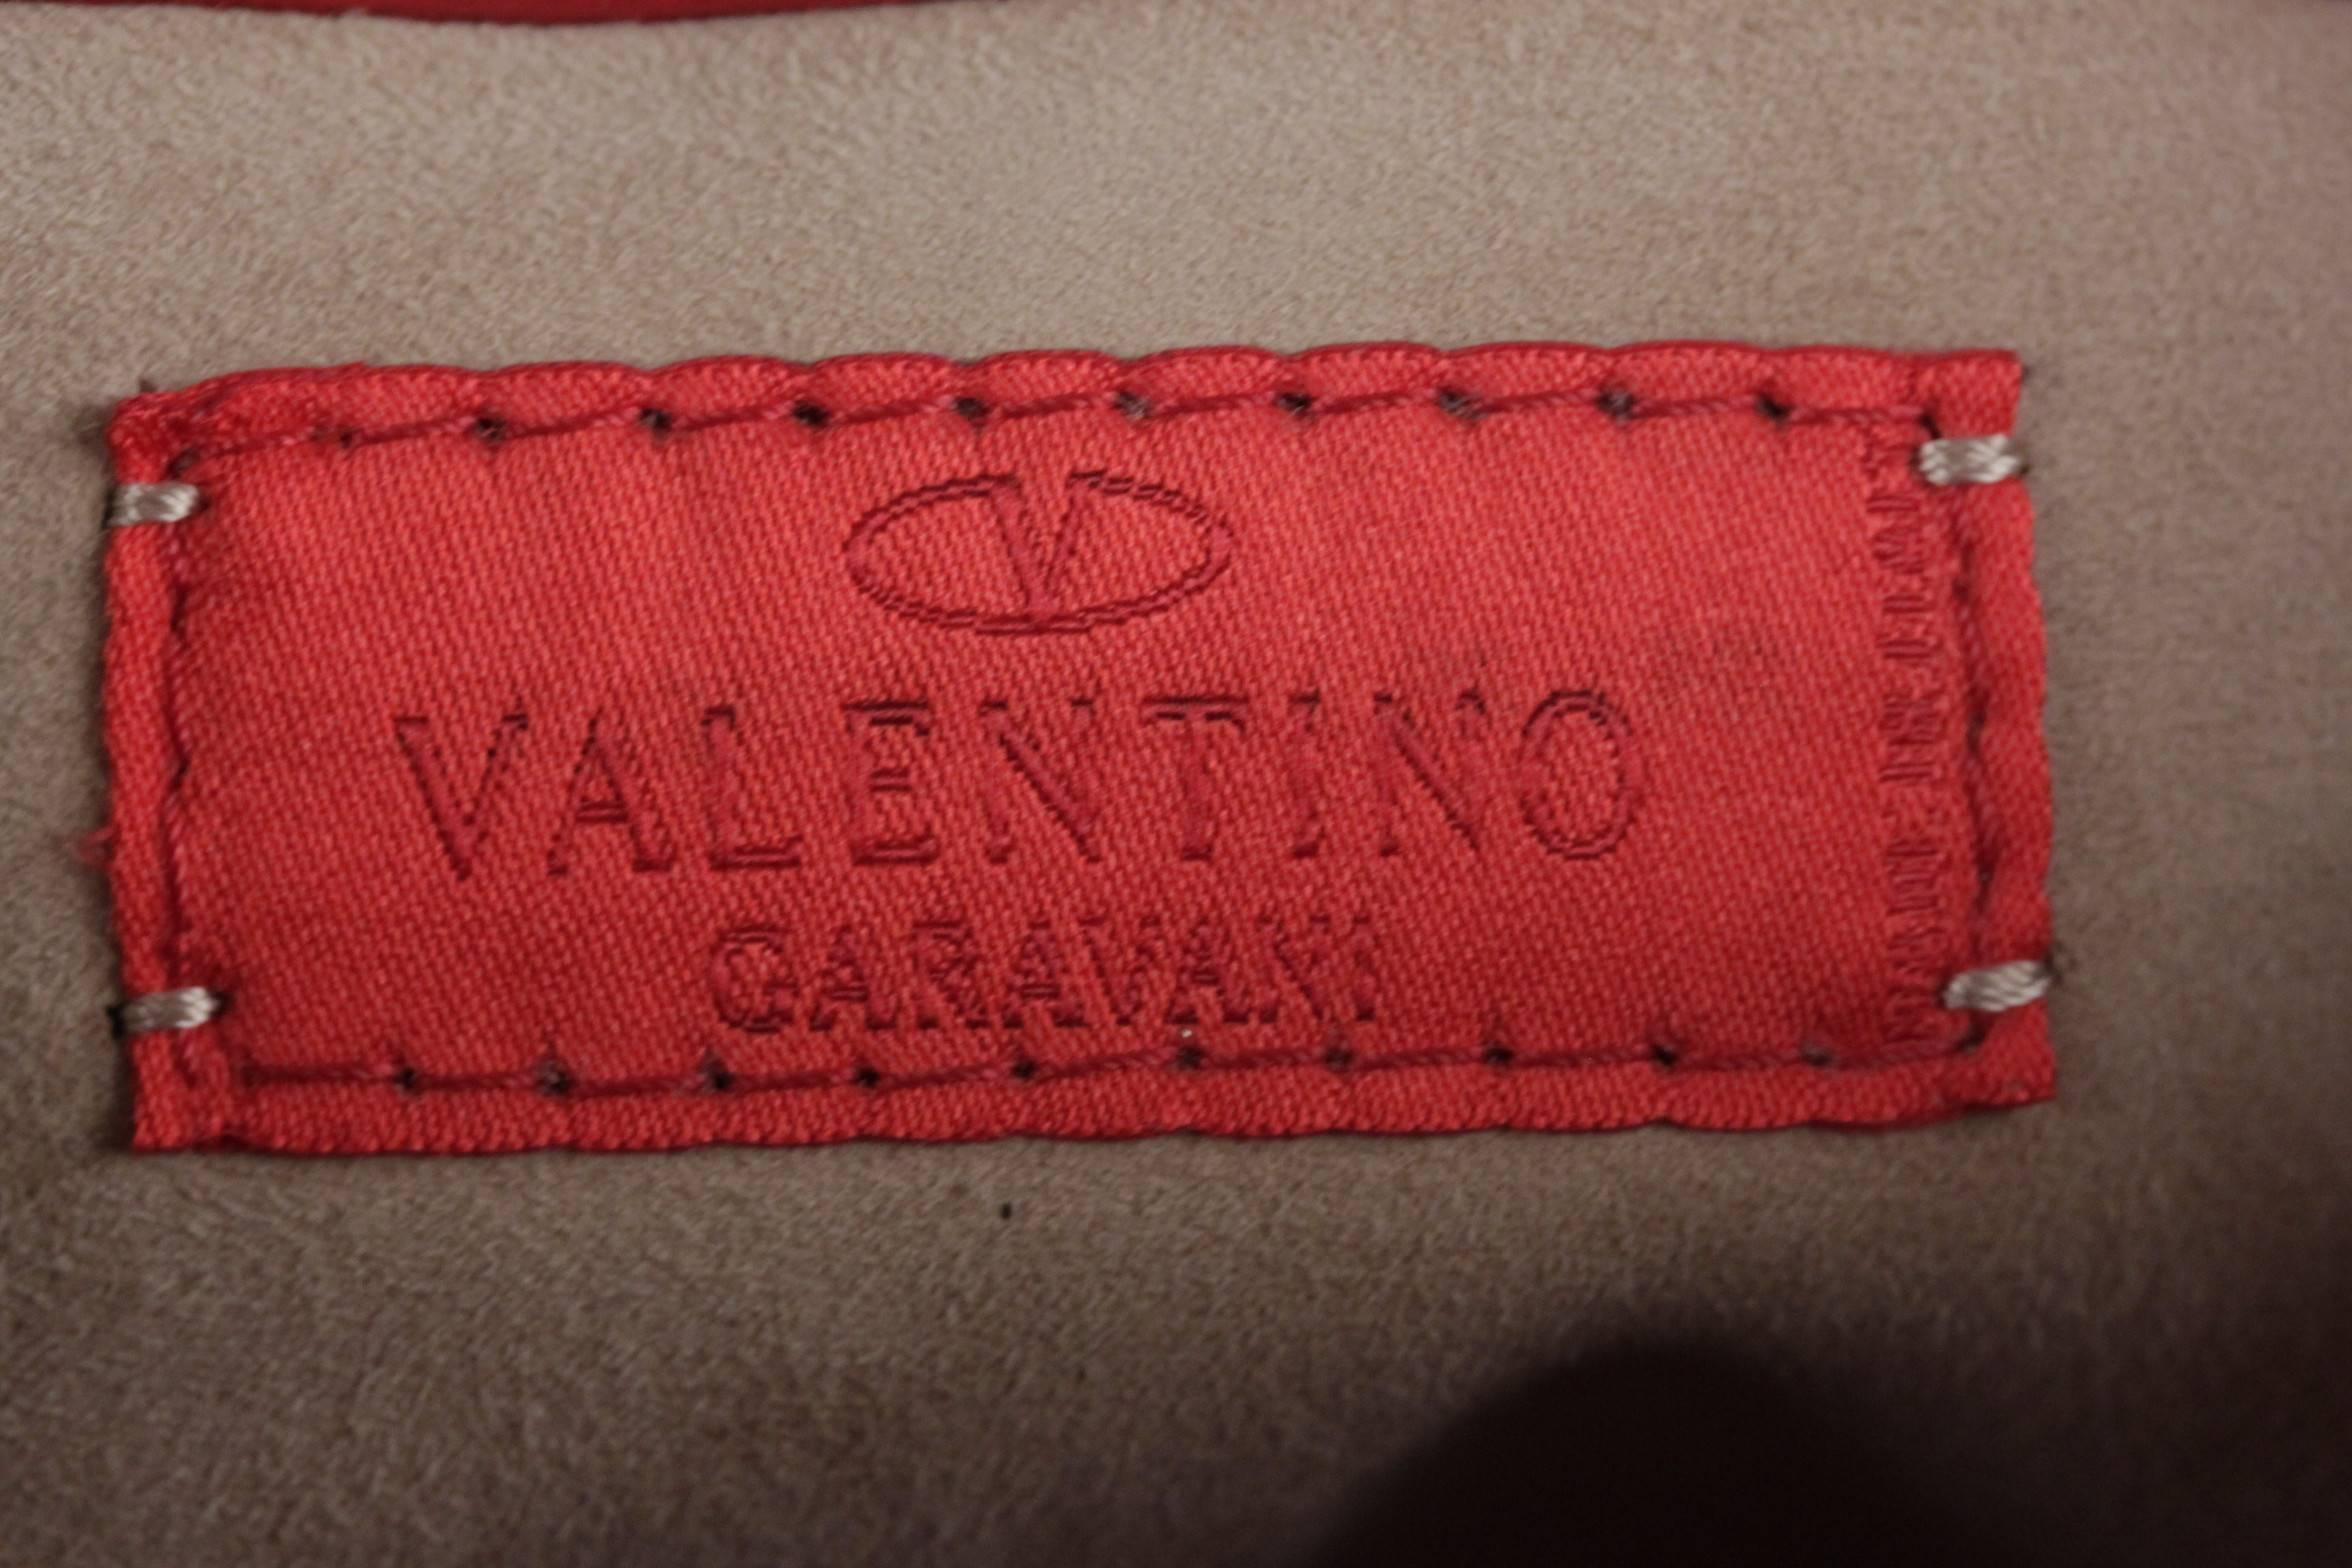 VALENTINO GARAVANI Red Leather SHOULDER BAG Handbag w/ FRONT POCKETS 4